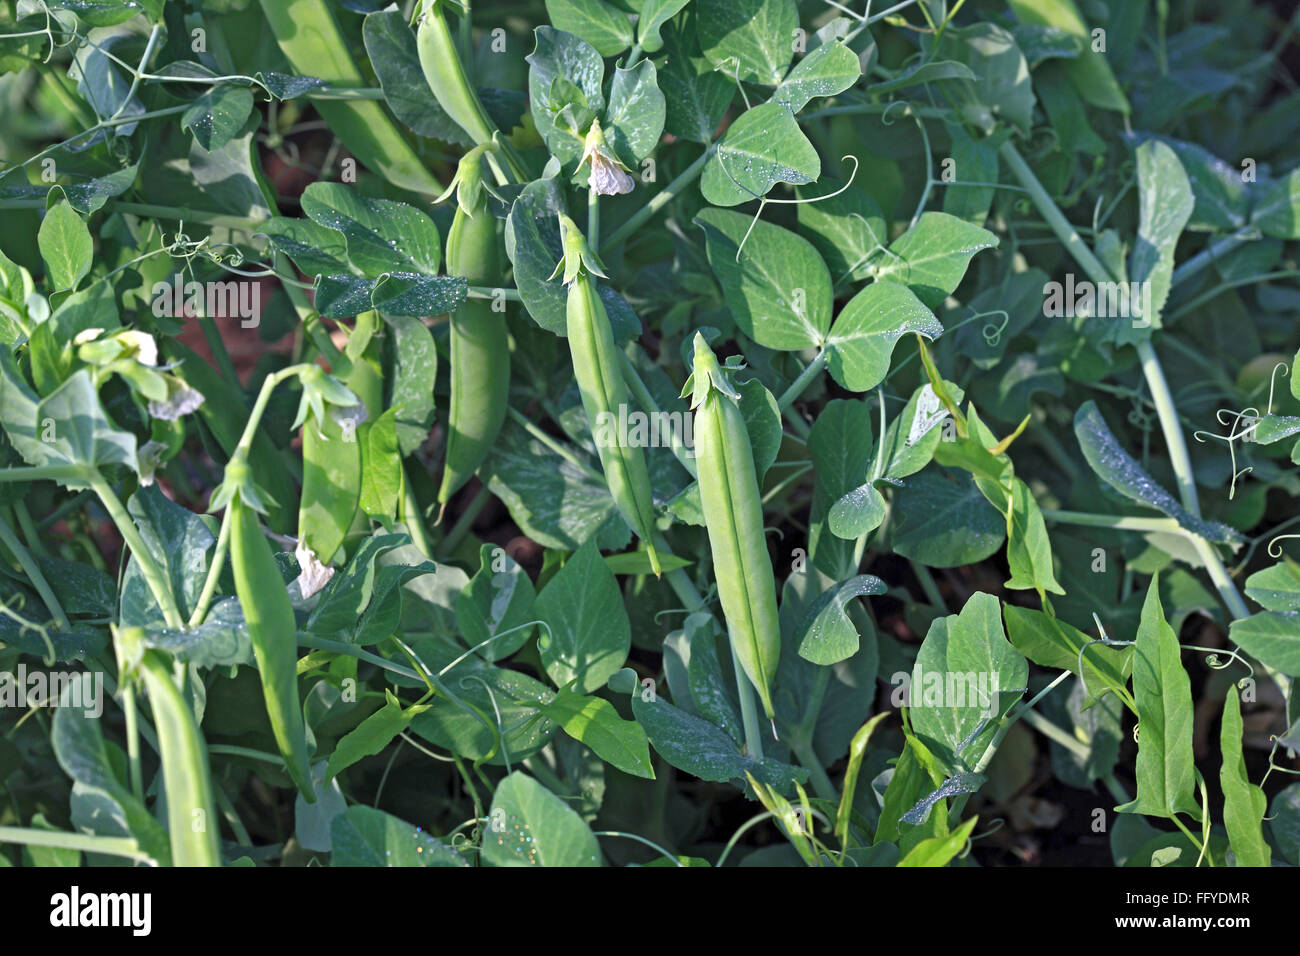 green-vegetable-and-pulses-green-peas-pisum-sativum-garden-peas-pods-FFYDMR.jpg